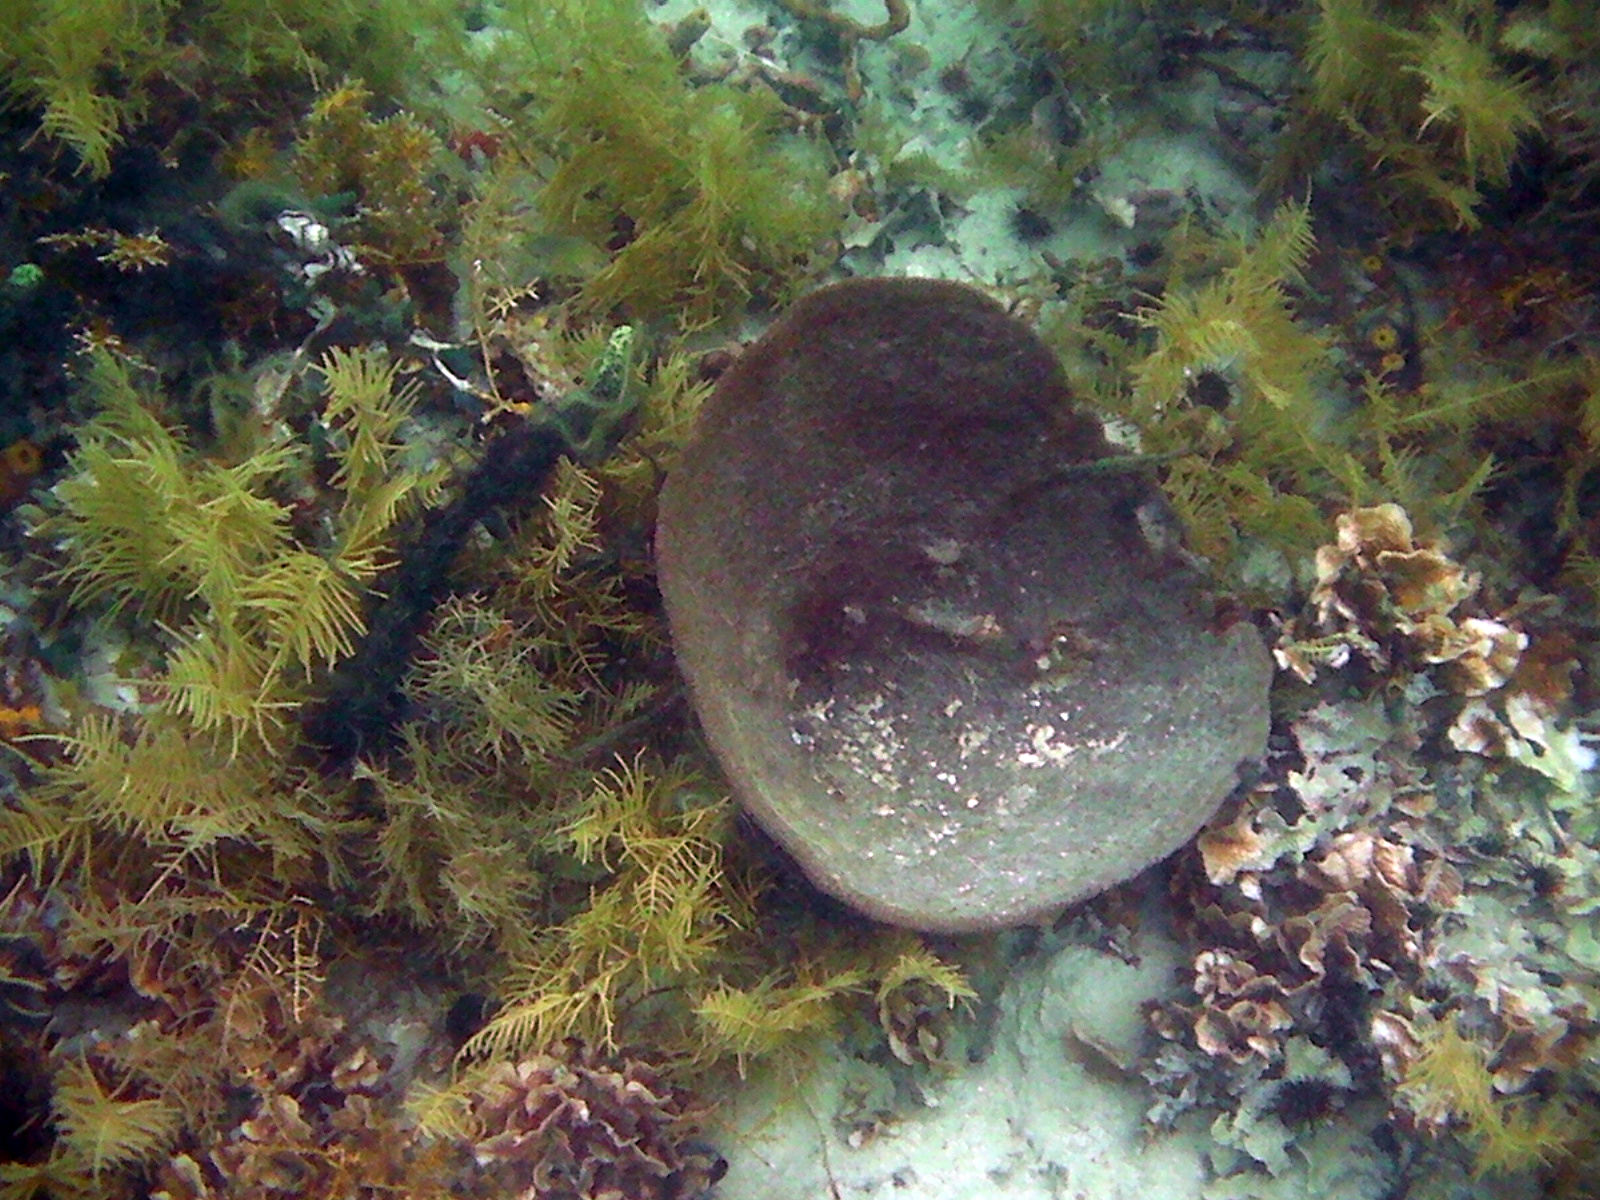 Coral Chimenea gigante